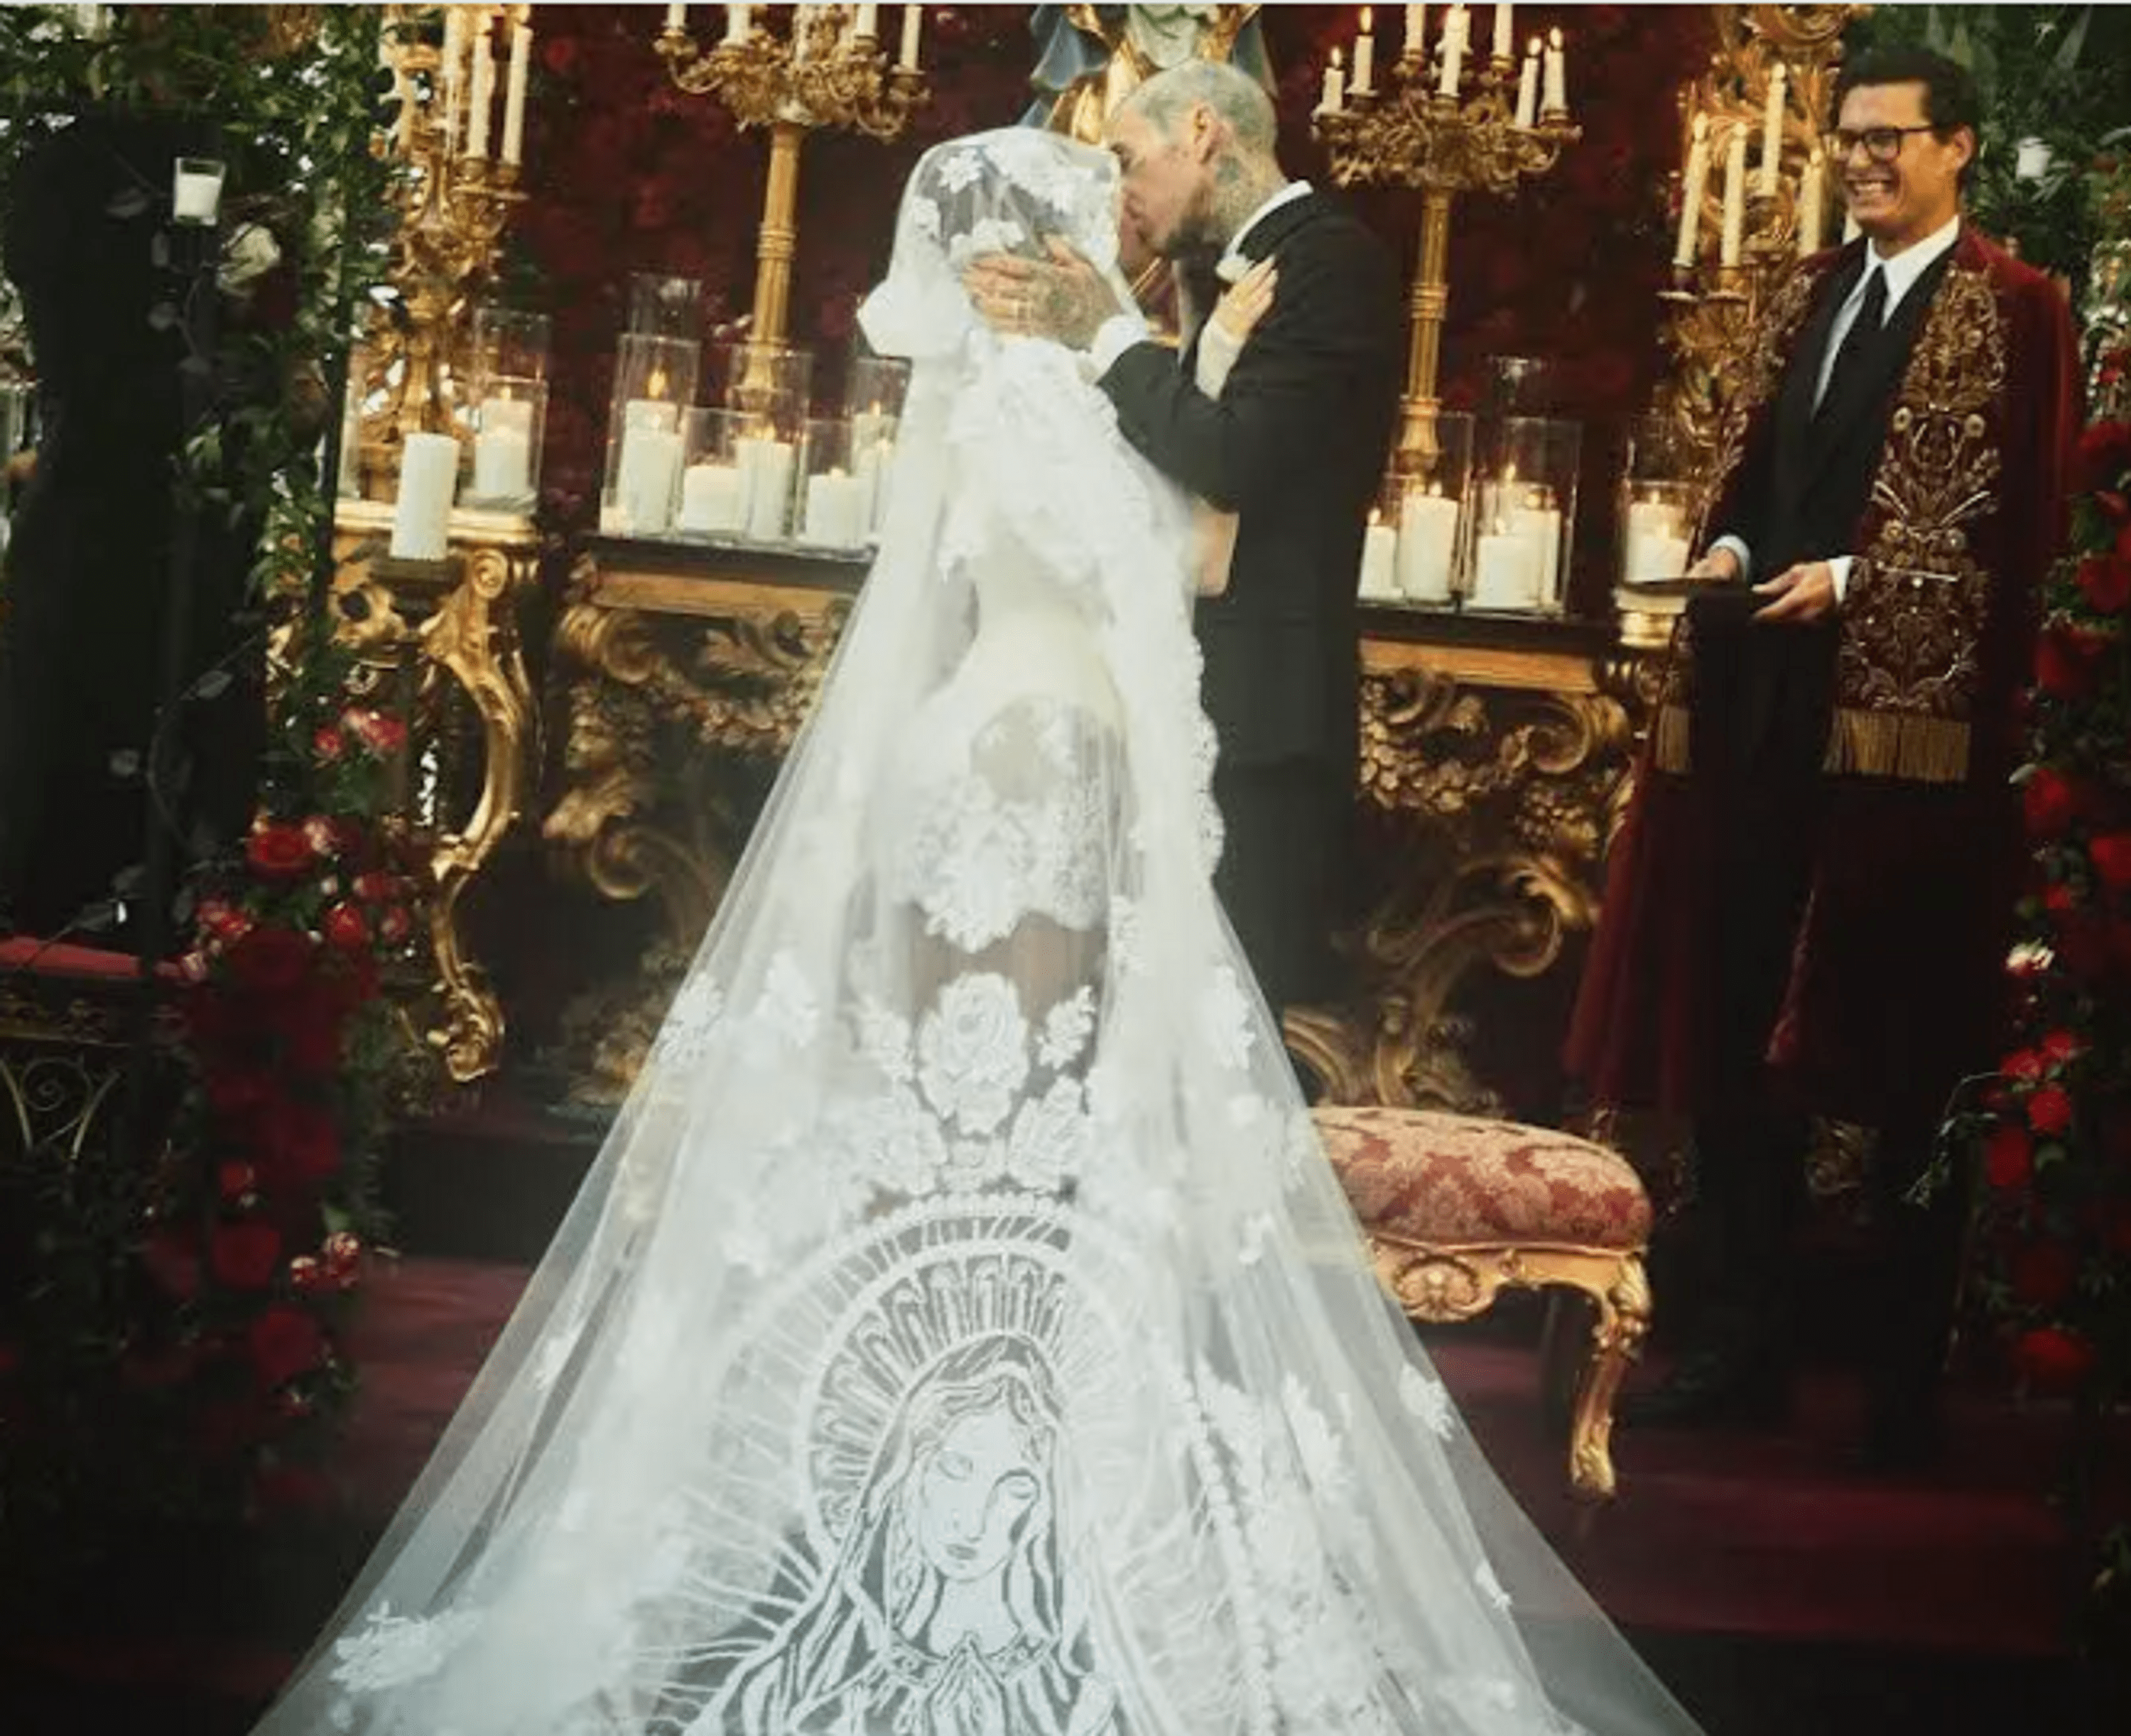 Kourtney Kardashian and Travis Barker's wedding was sponsored by Dolce & Gabbana